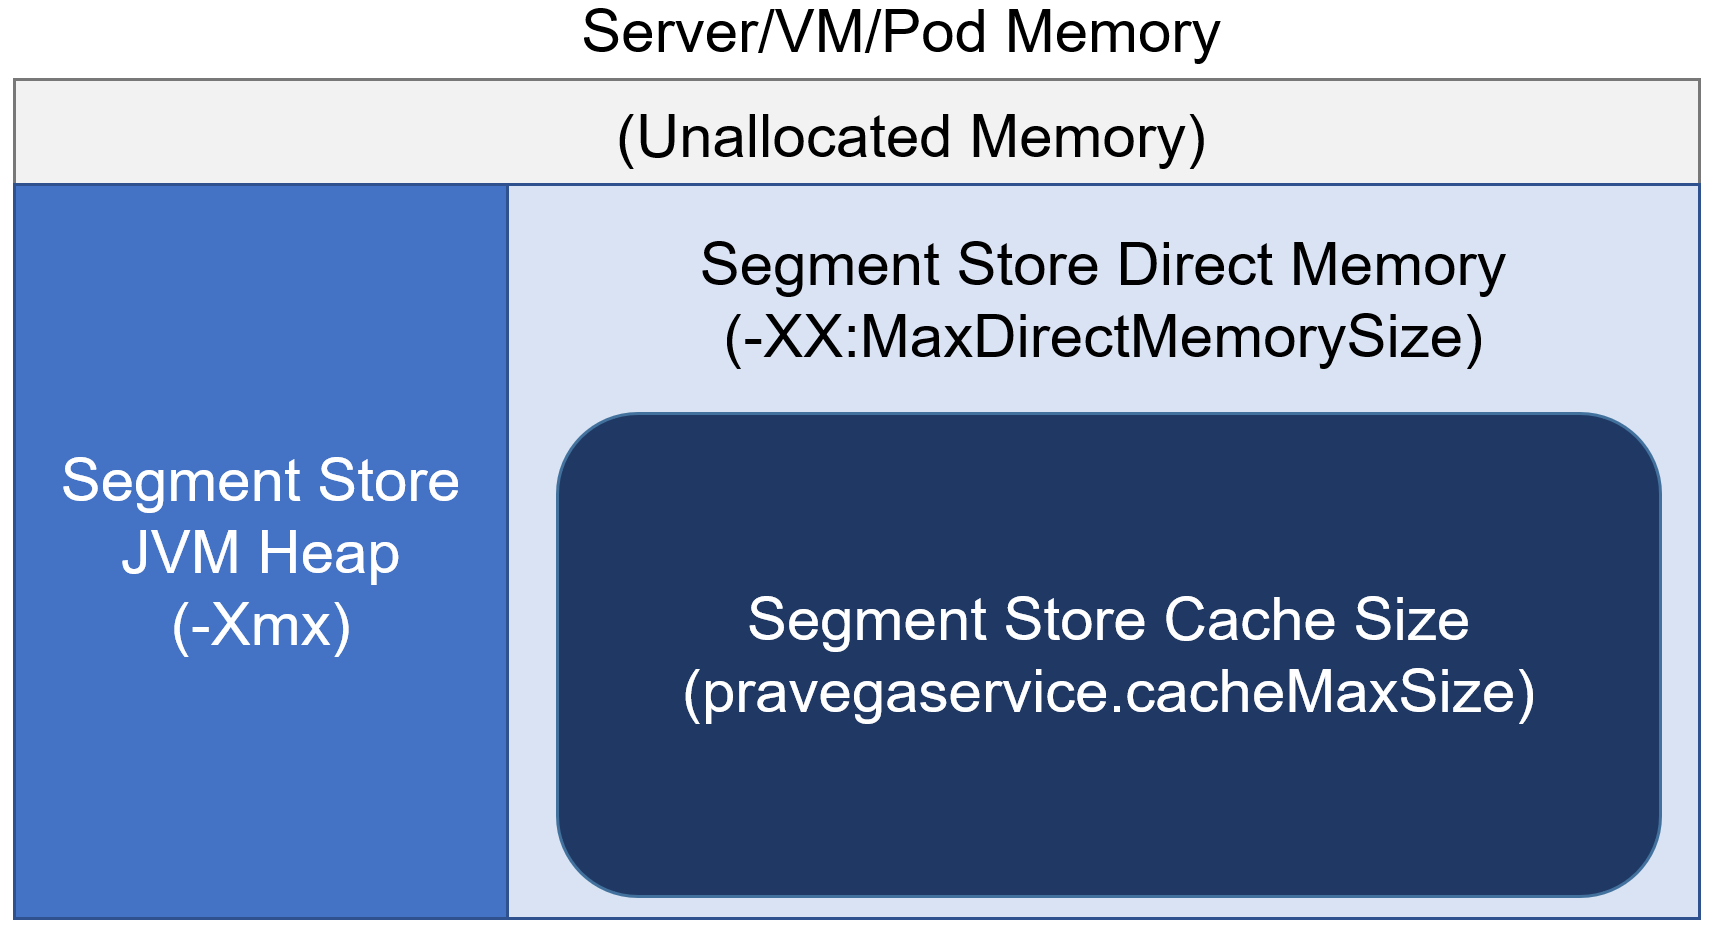 Segment Store Memory Configuration